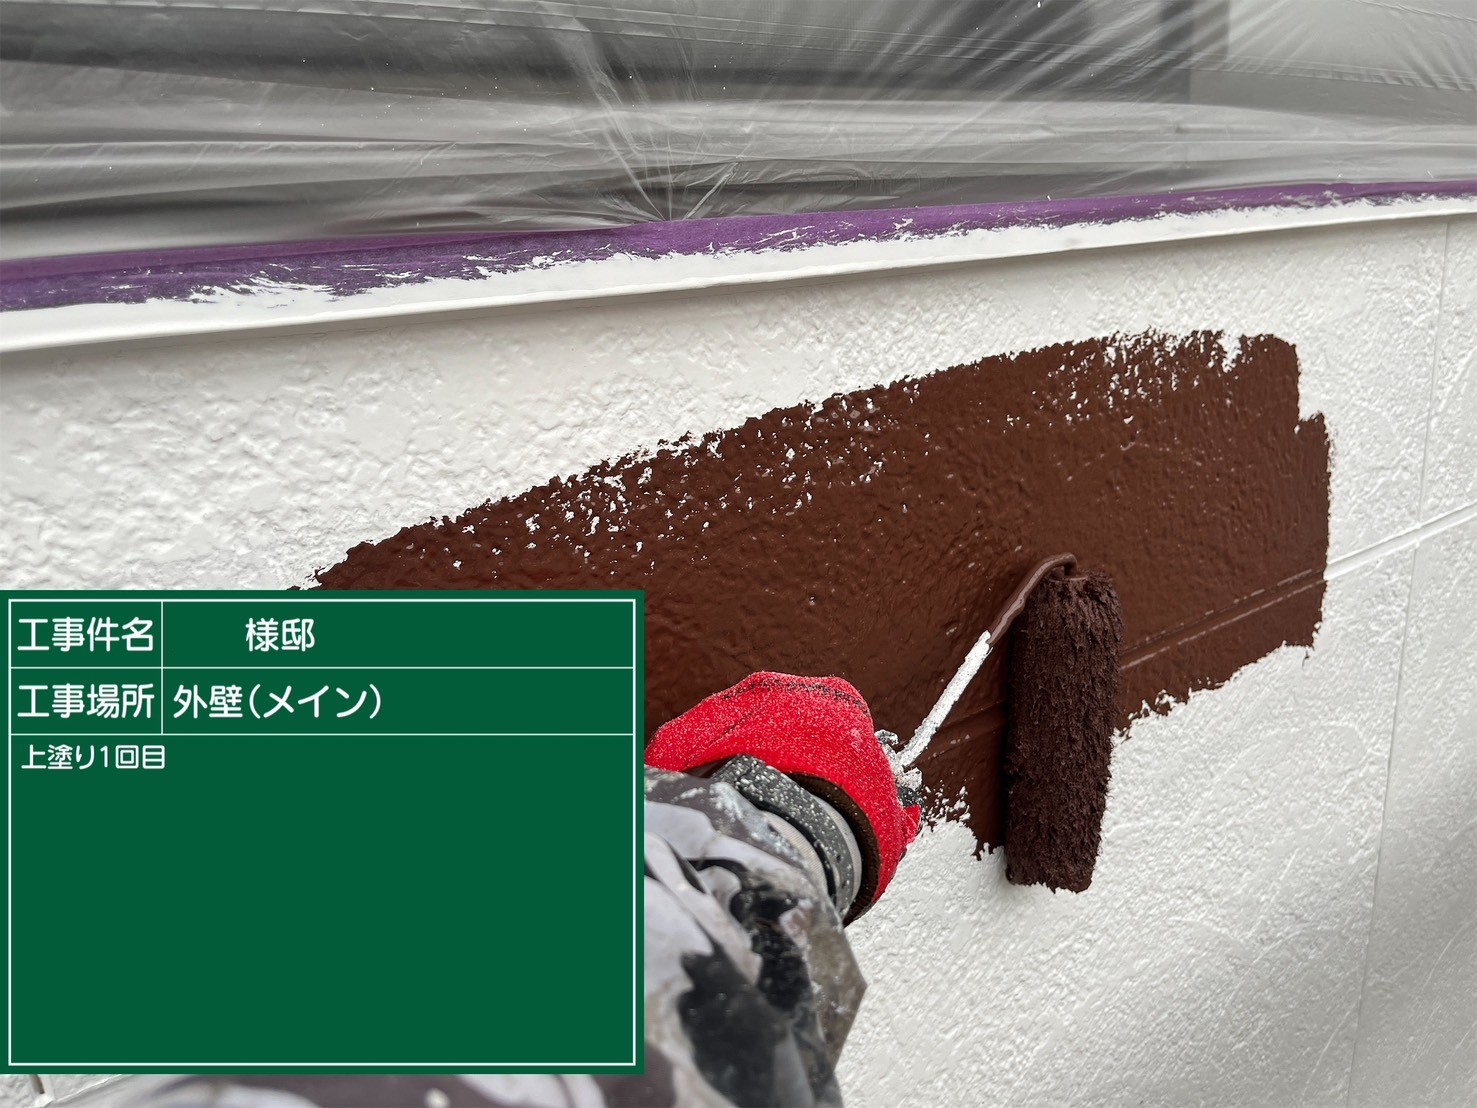 福岡県筑紫野市岡田のK様邸で色褪せを起こしたサイディングボードの塗り替えと剥がれを起こしている付帯部の補修を行い、屋根の汚れも一度きれいに除去してから全体の塗装を行っていきます。3/9着工です。【チラシより】